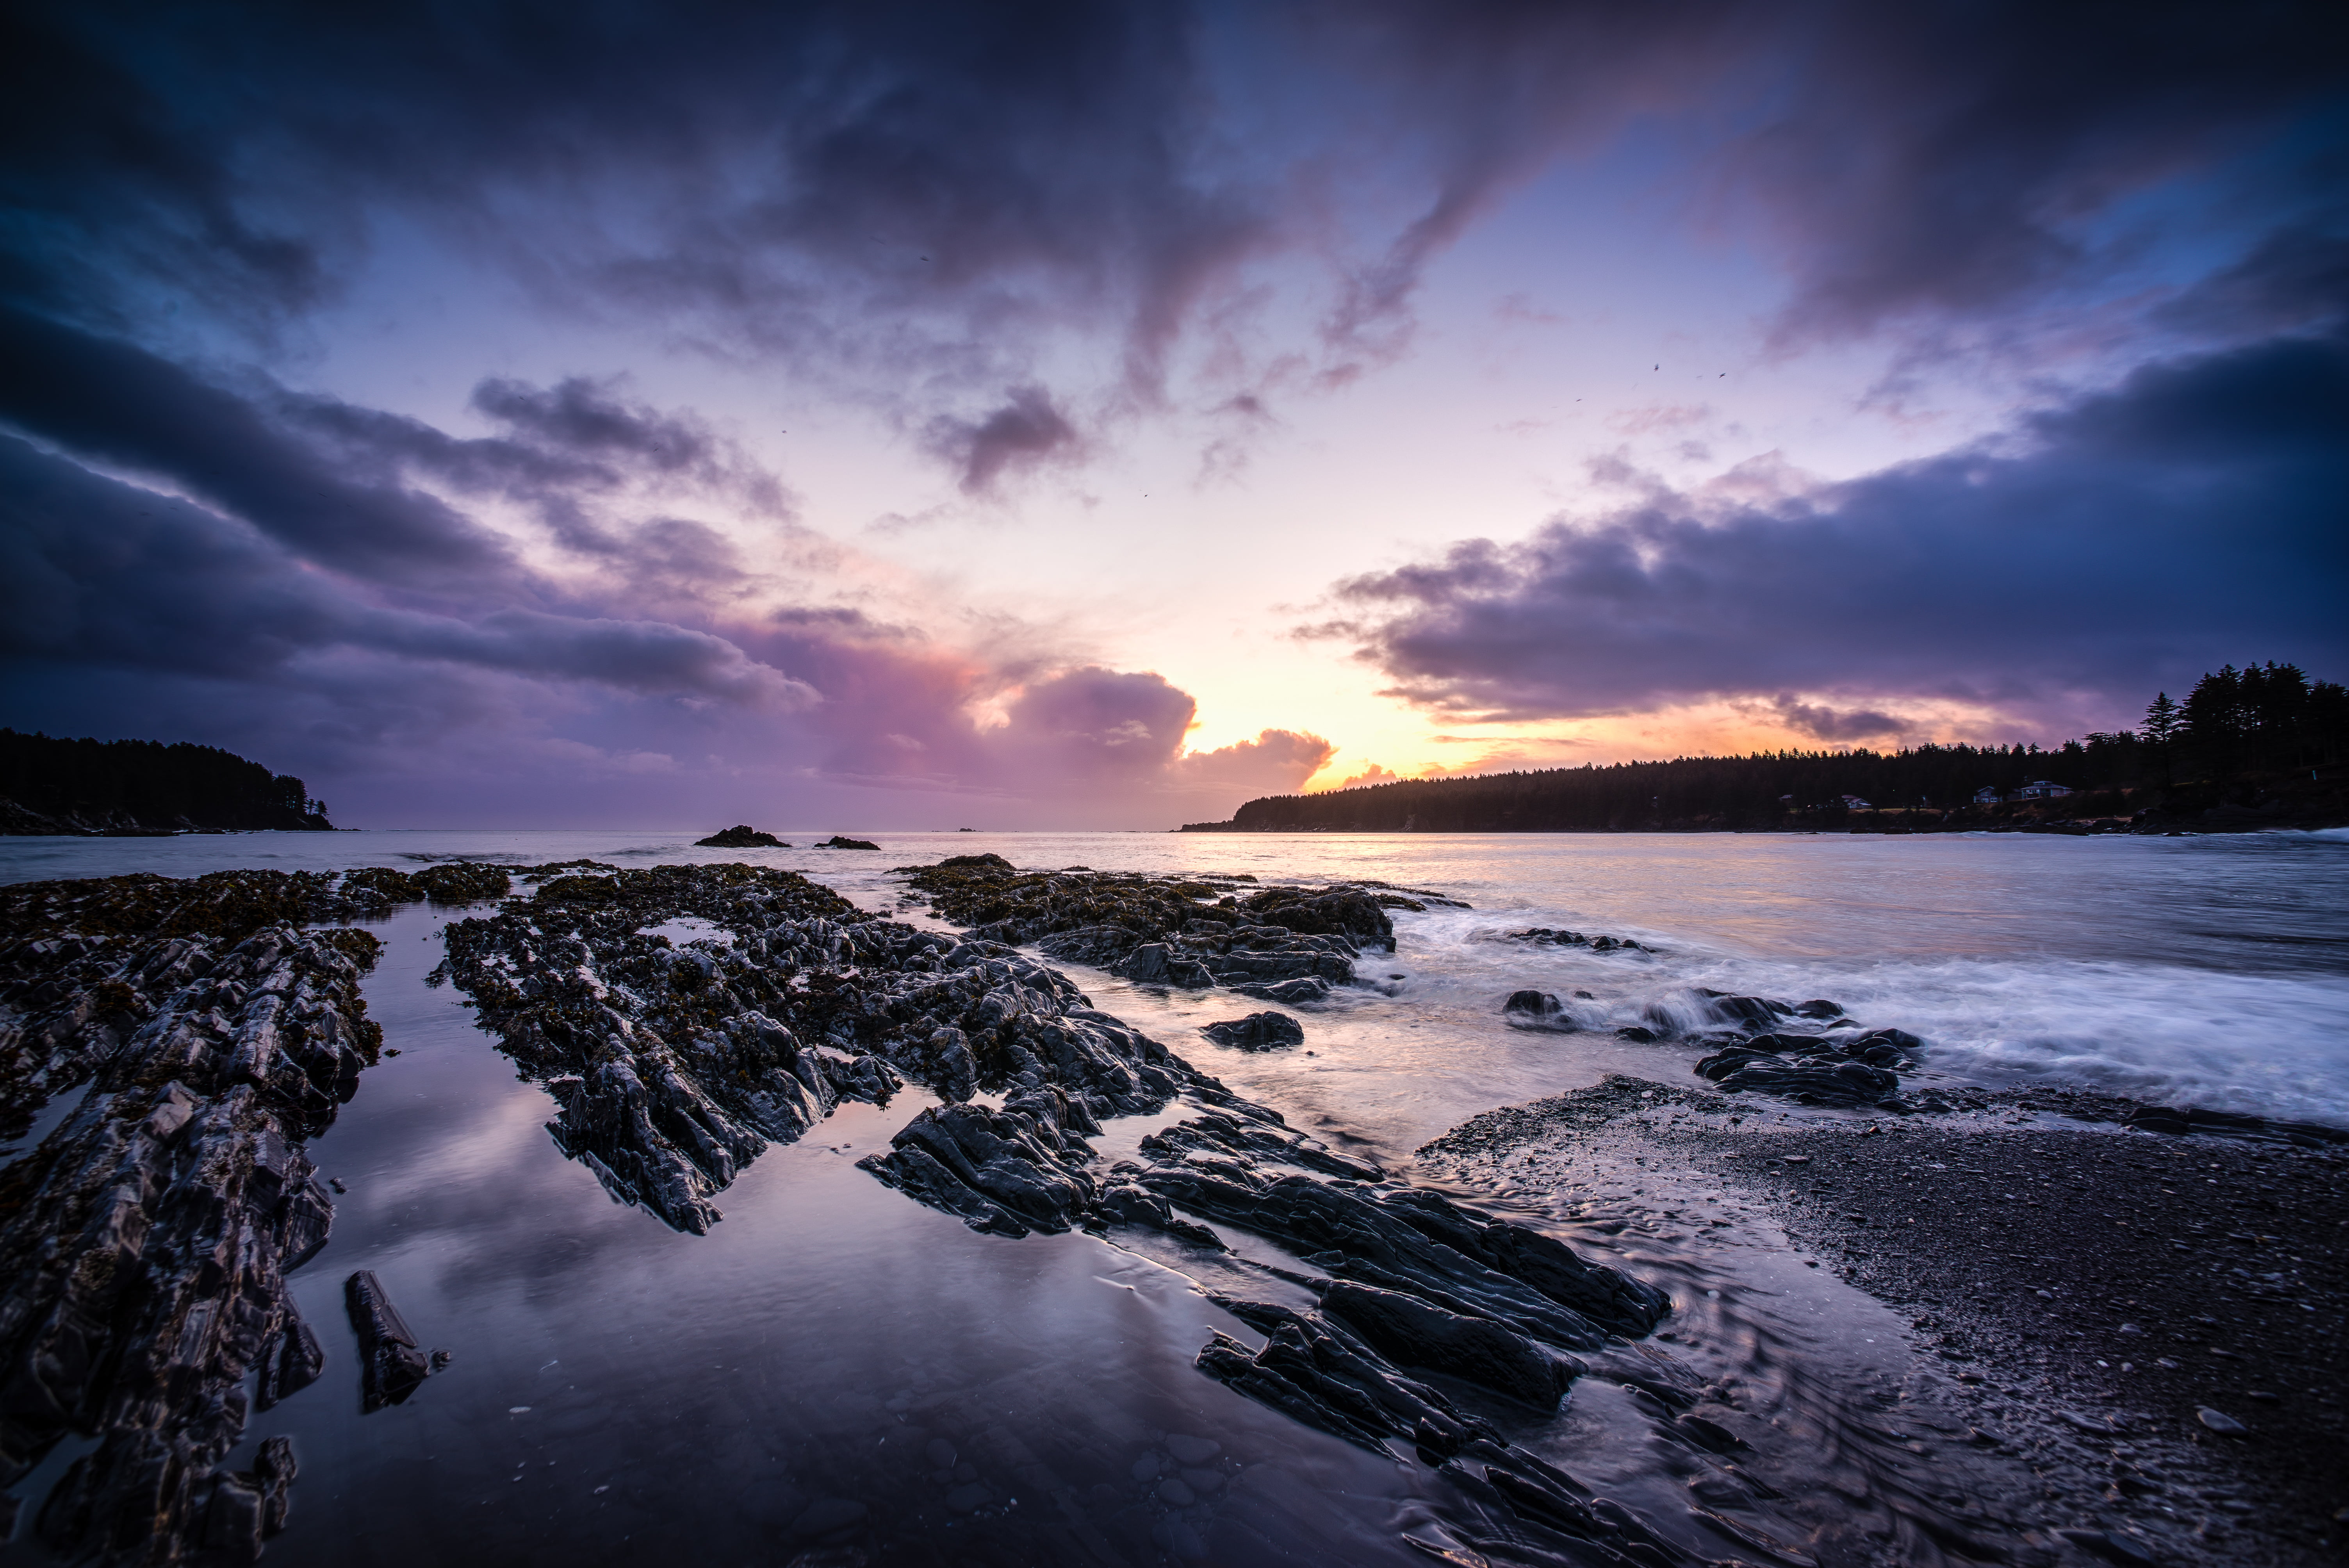 body of water during sunset, Mill Bay, Rocks, Nikon D610, Nikkor